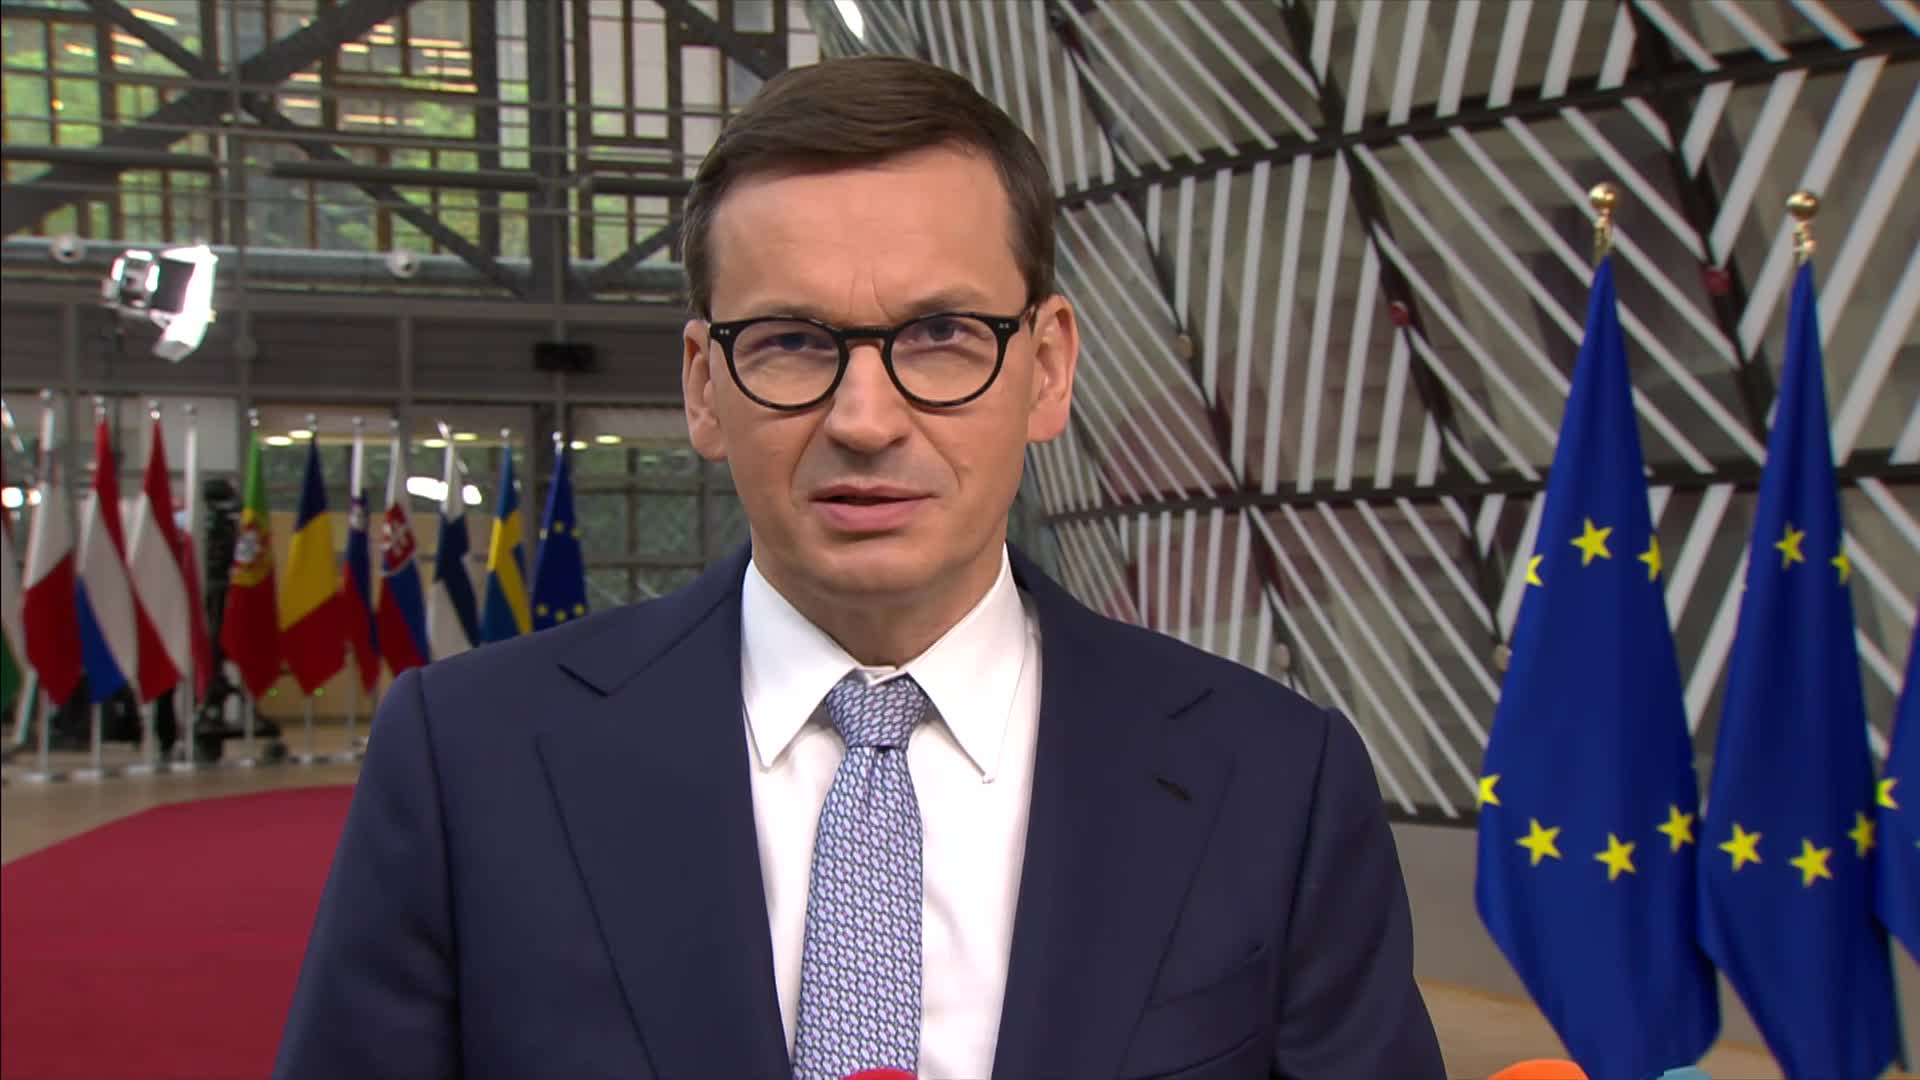 Video: Doorstep by Mateusz Morawiecki, Prime Minister of Poland.